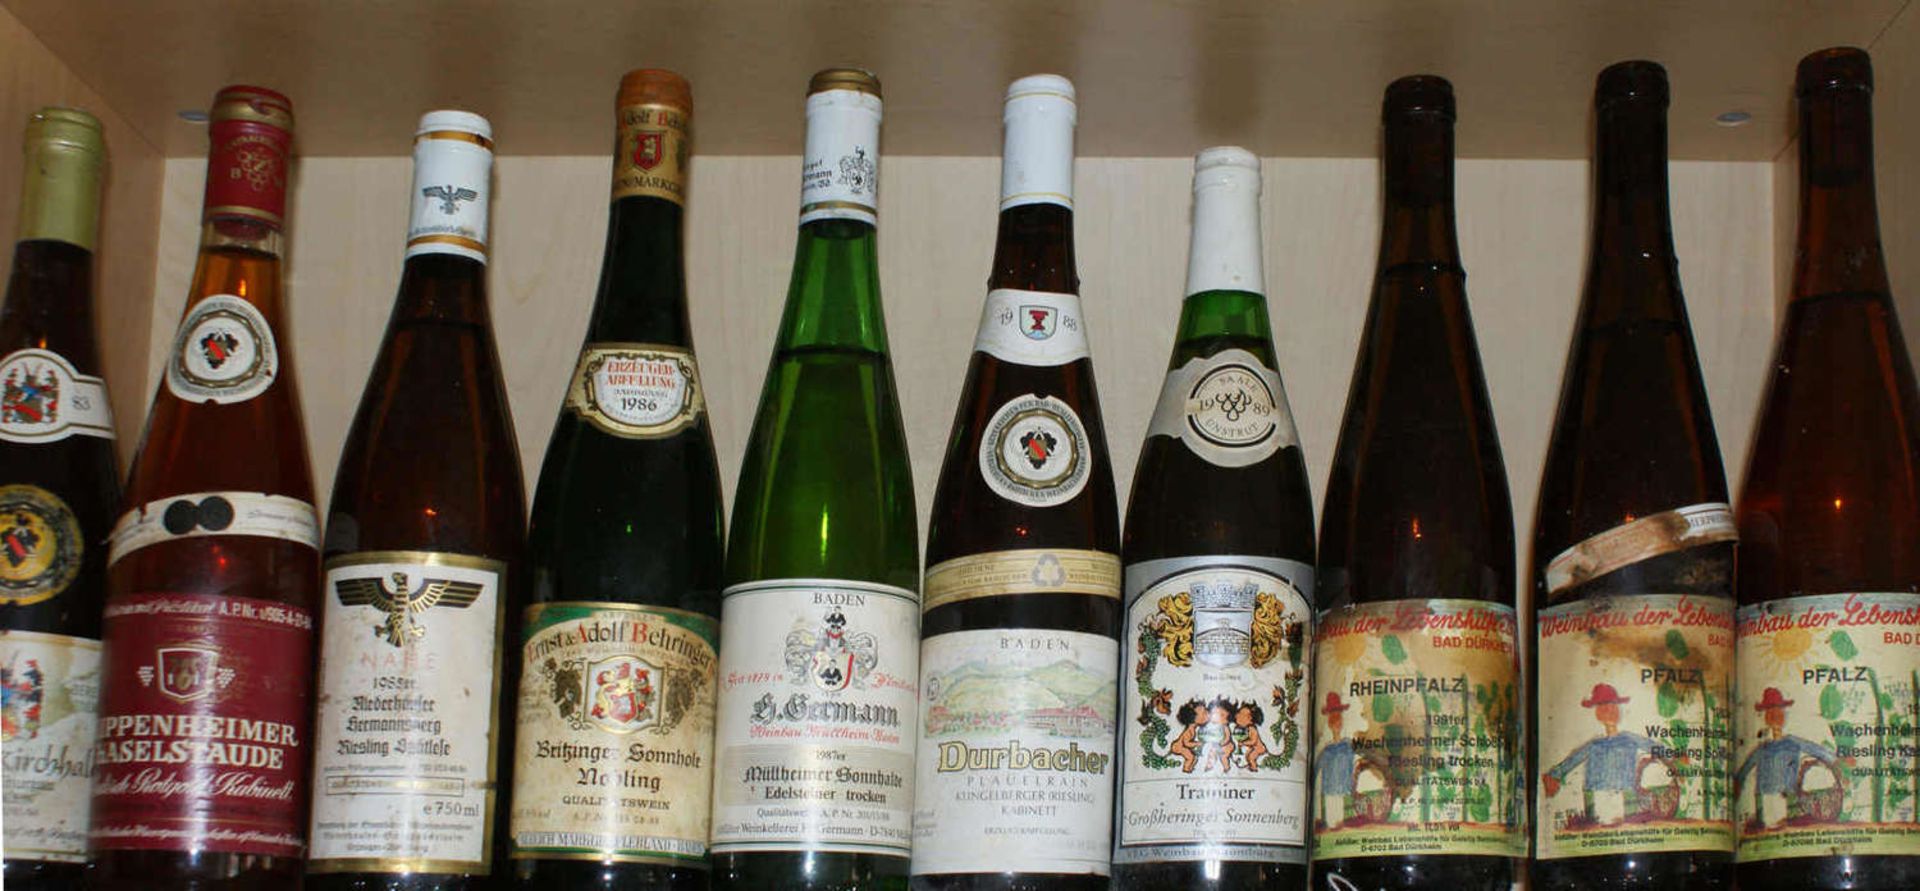 Konvolut Weisswein, verschiedene Winzer, Jahrgänge 1983-1989, 11991-1993. Insgesamt 10 Flaschen.